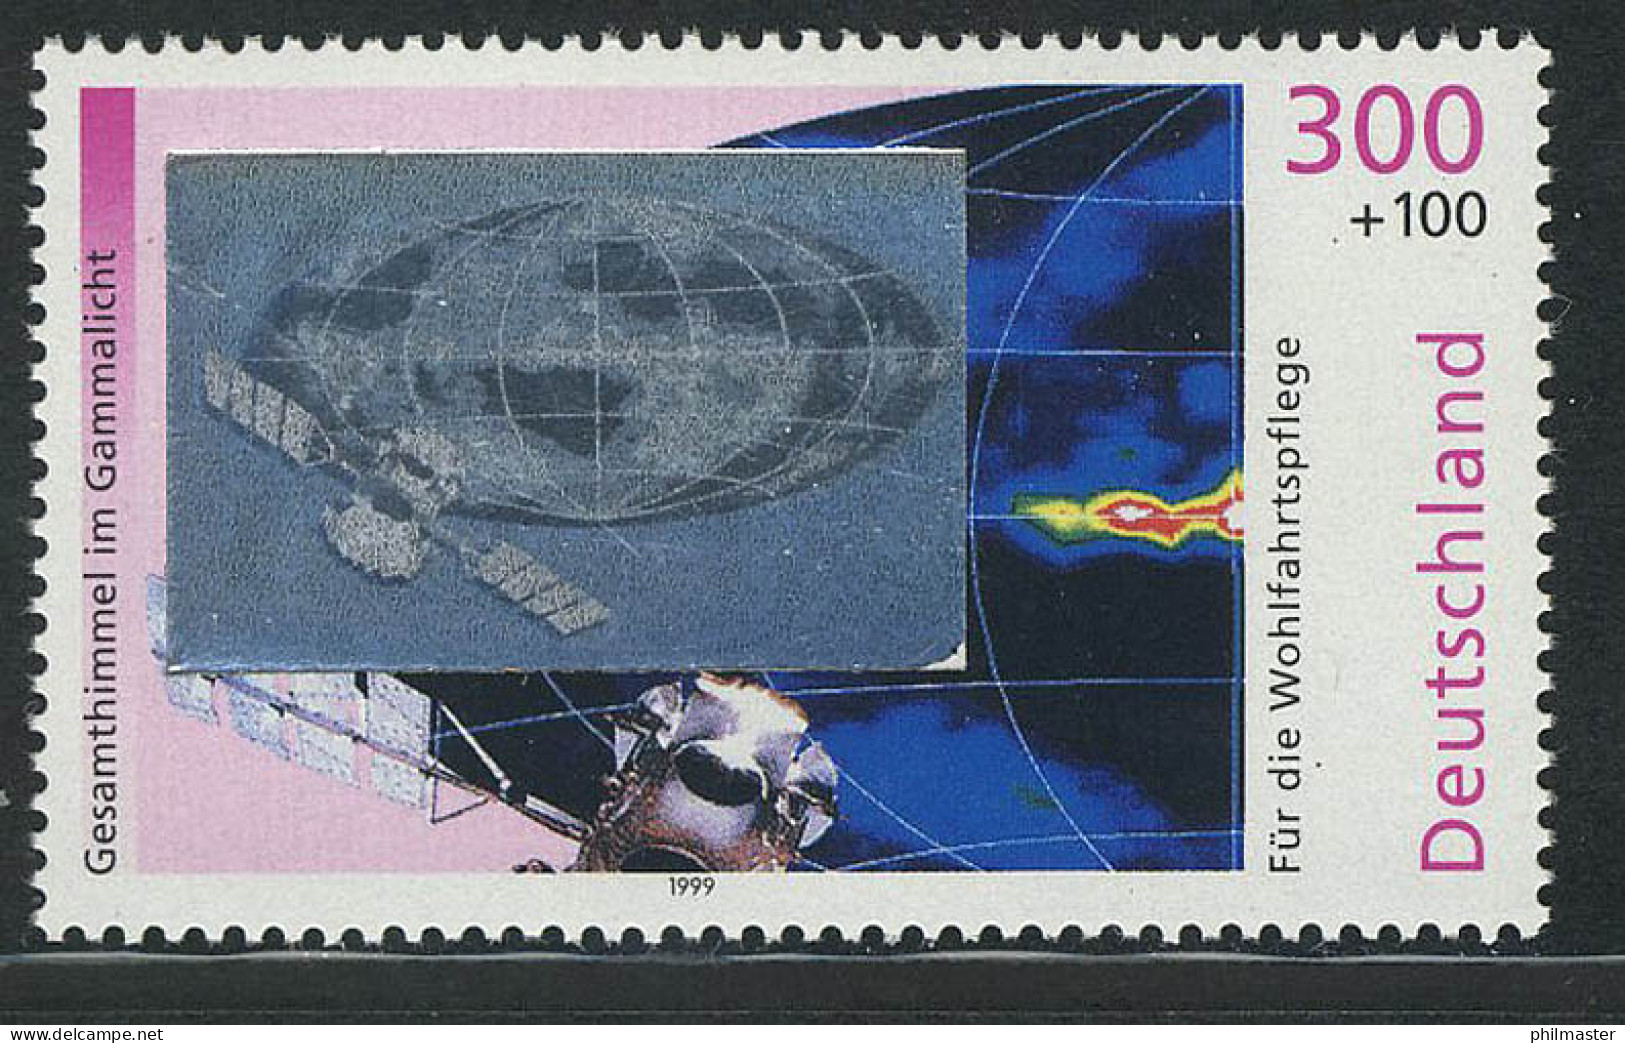 2081 Kosmos Gammastrahlung, Mit Hologramm Auf Der Marke, Postfrisch ** - Holograms